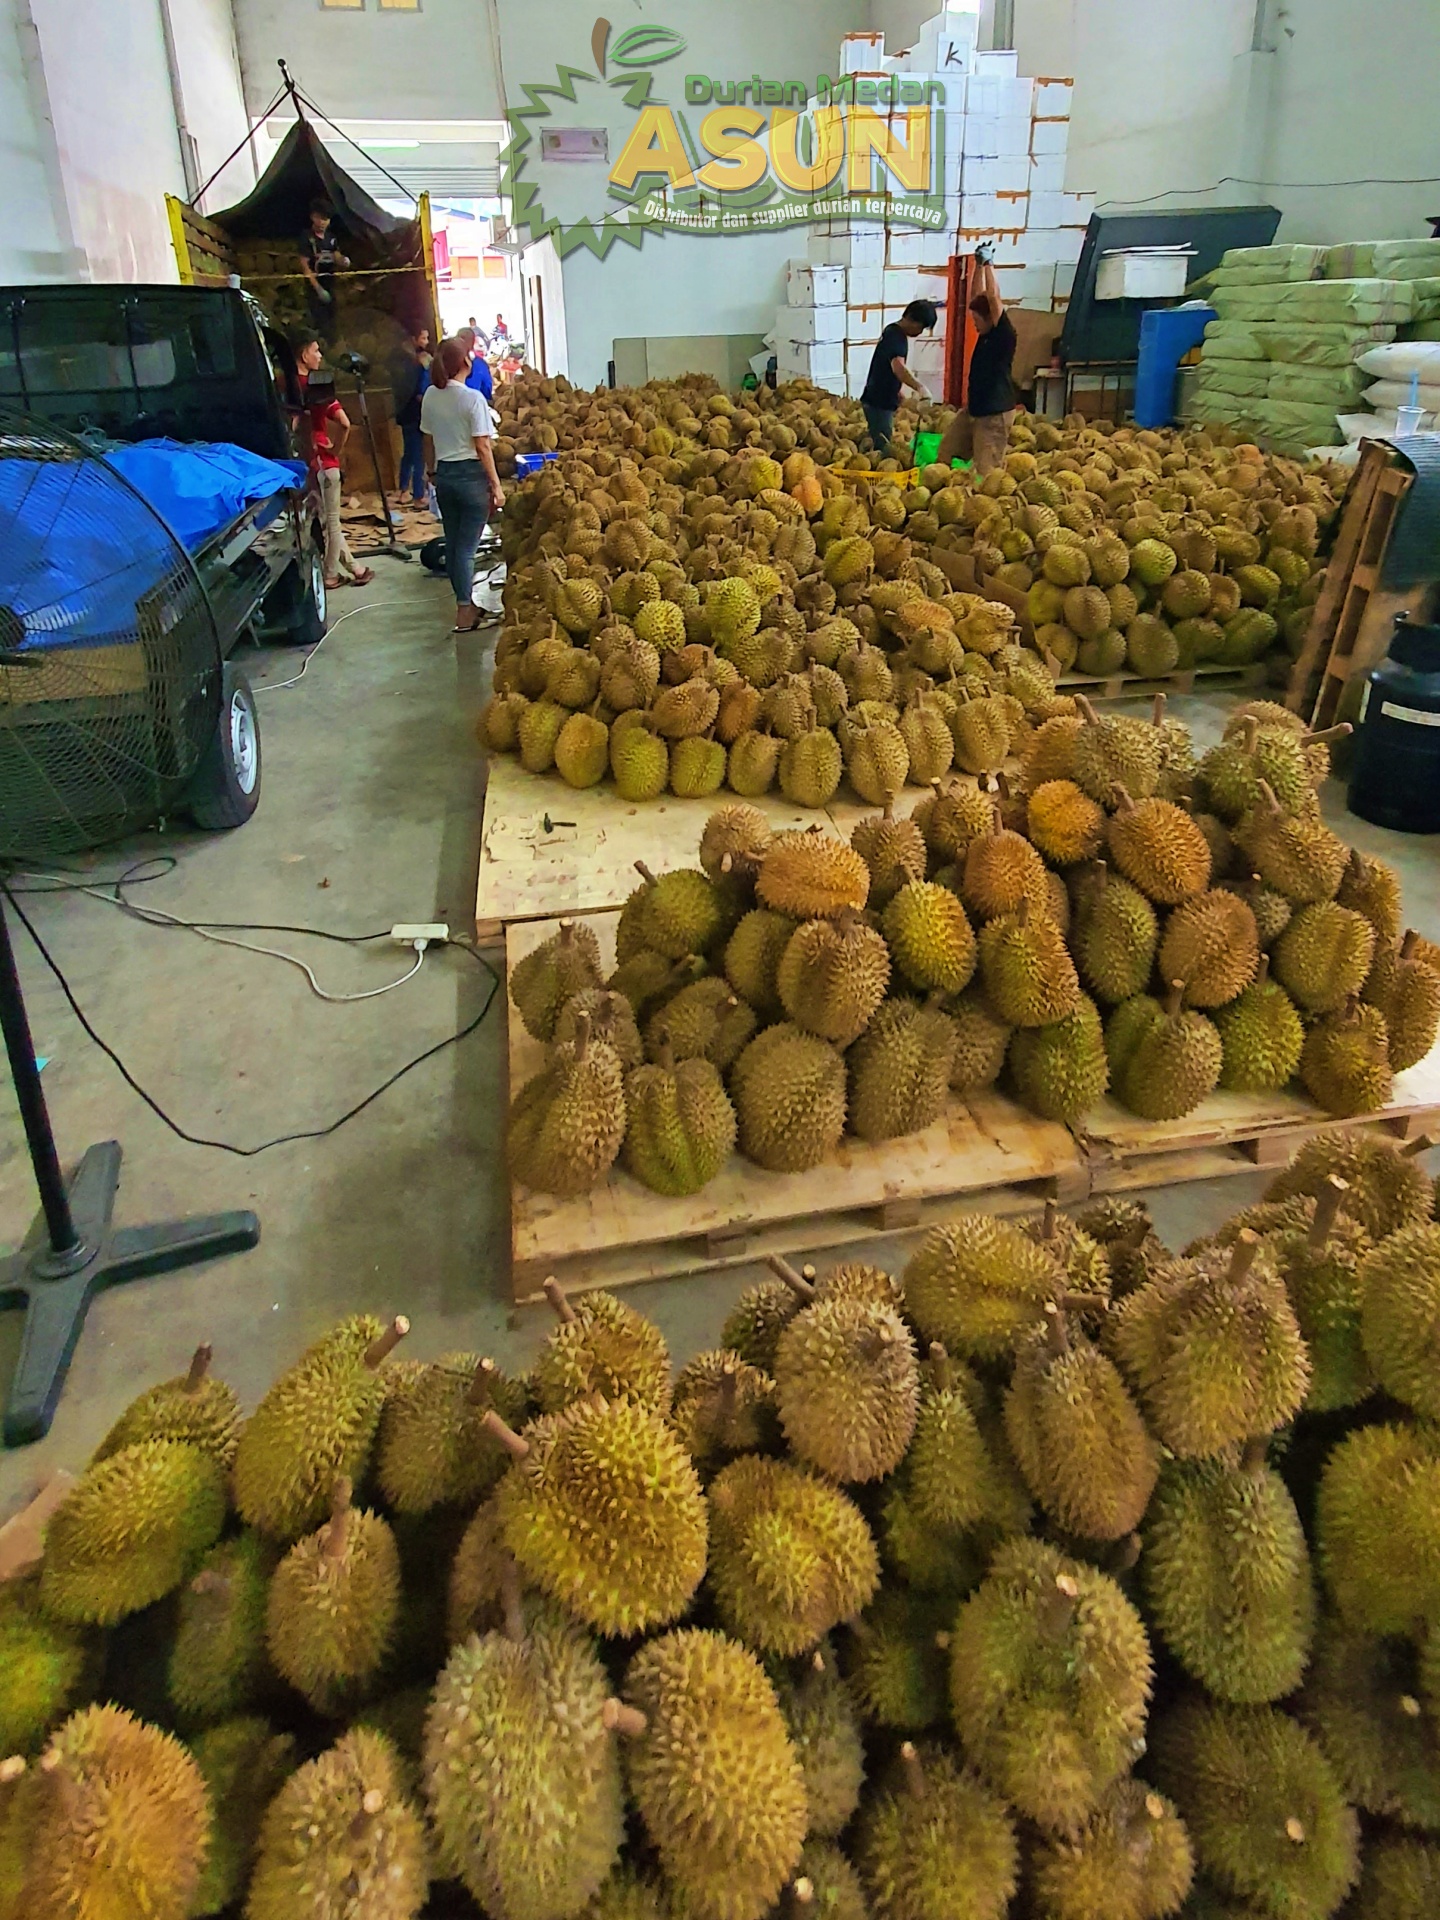 Durian Monthong Asun Durian